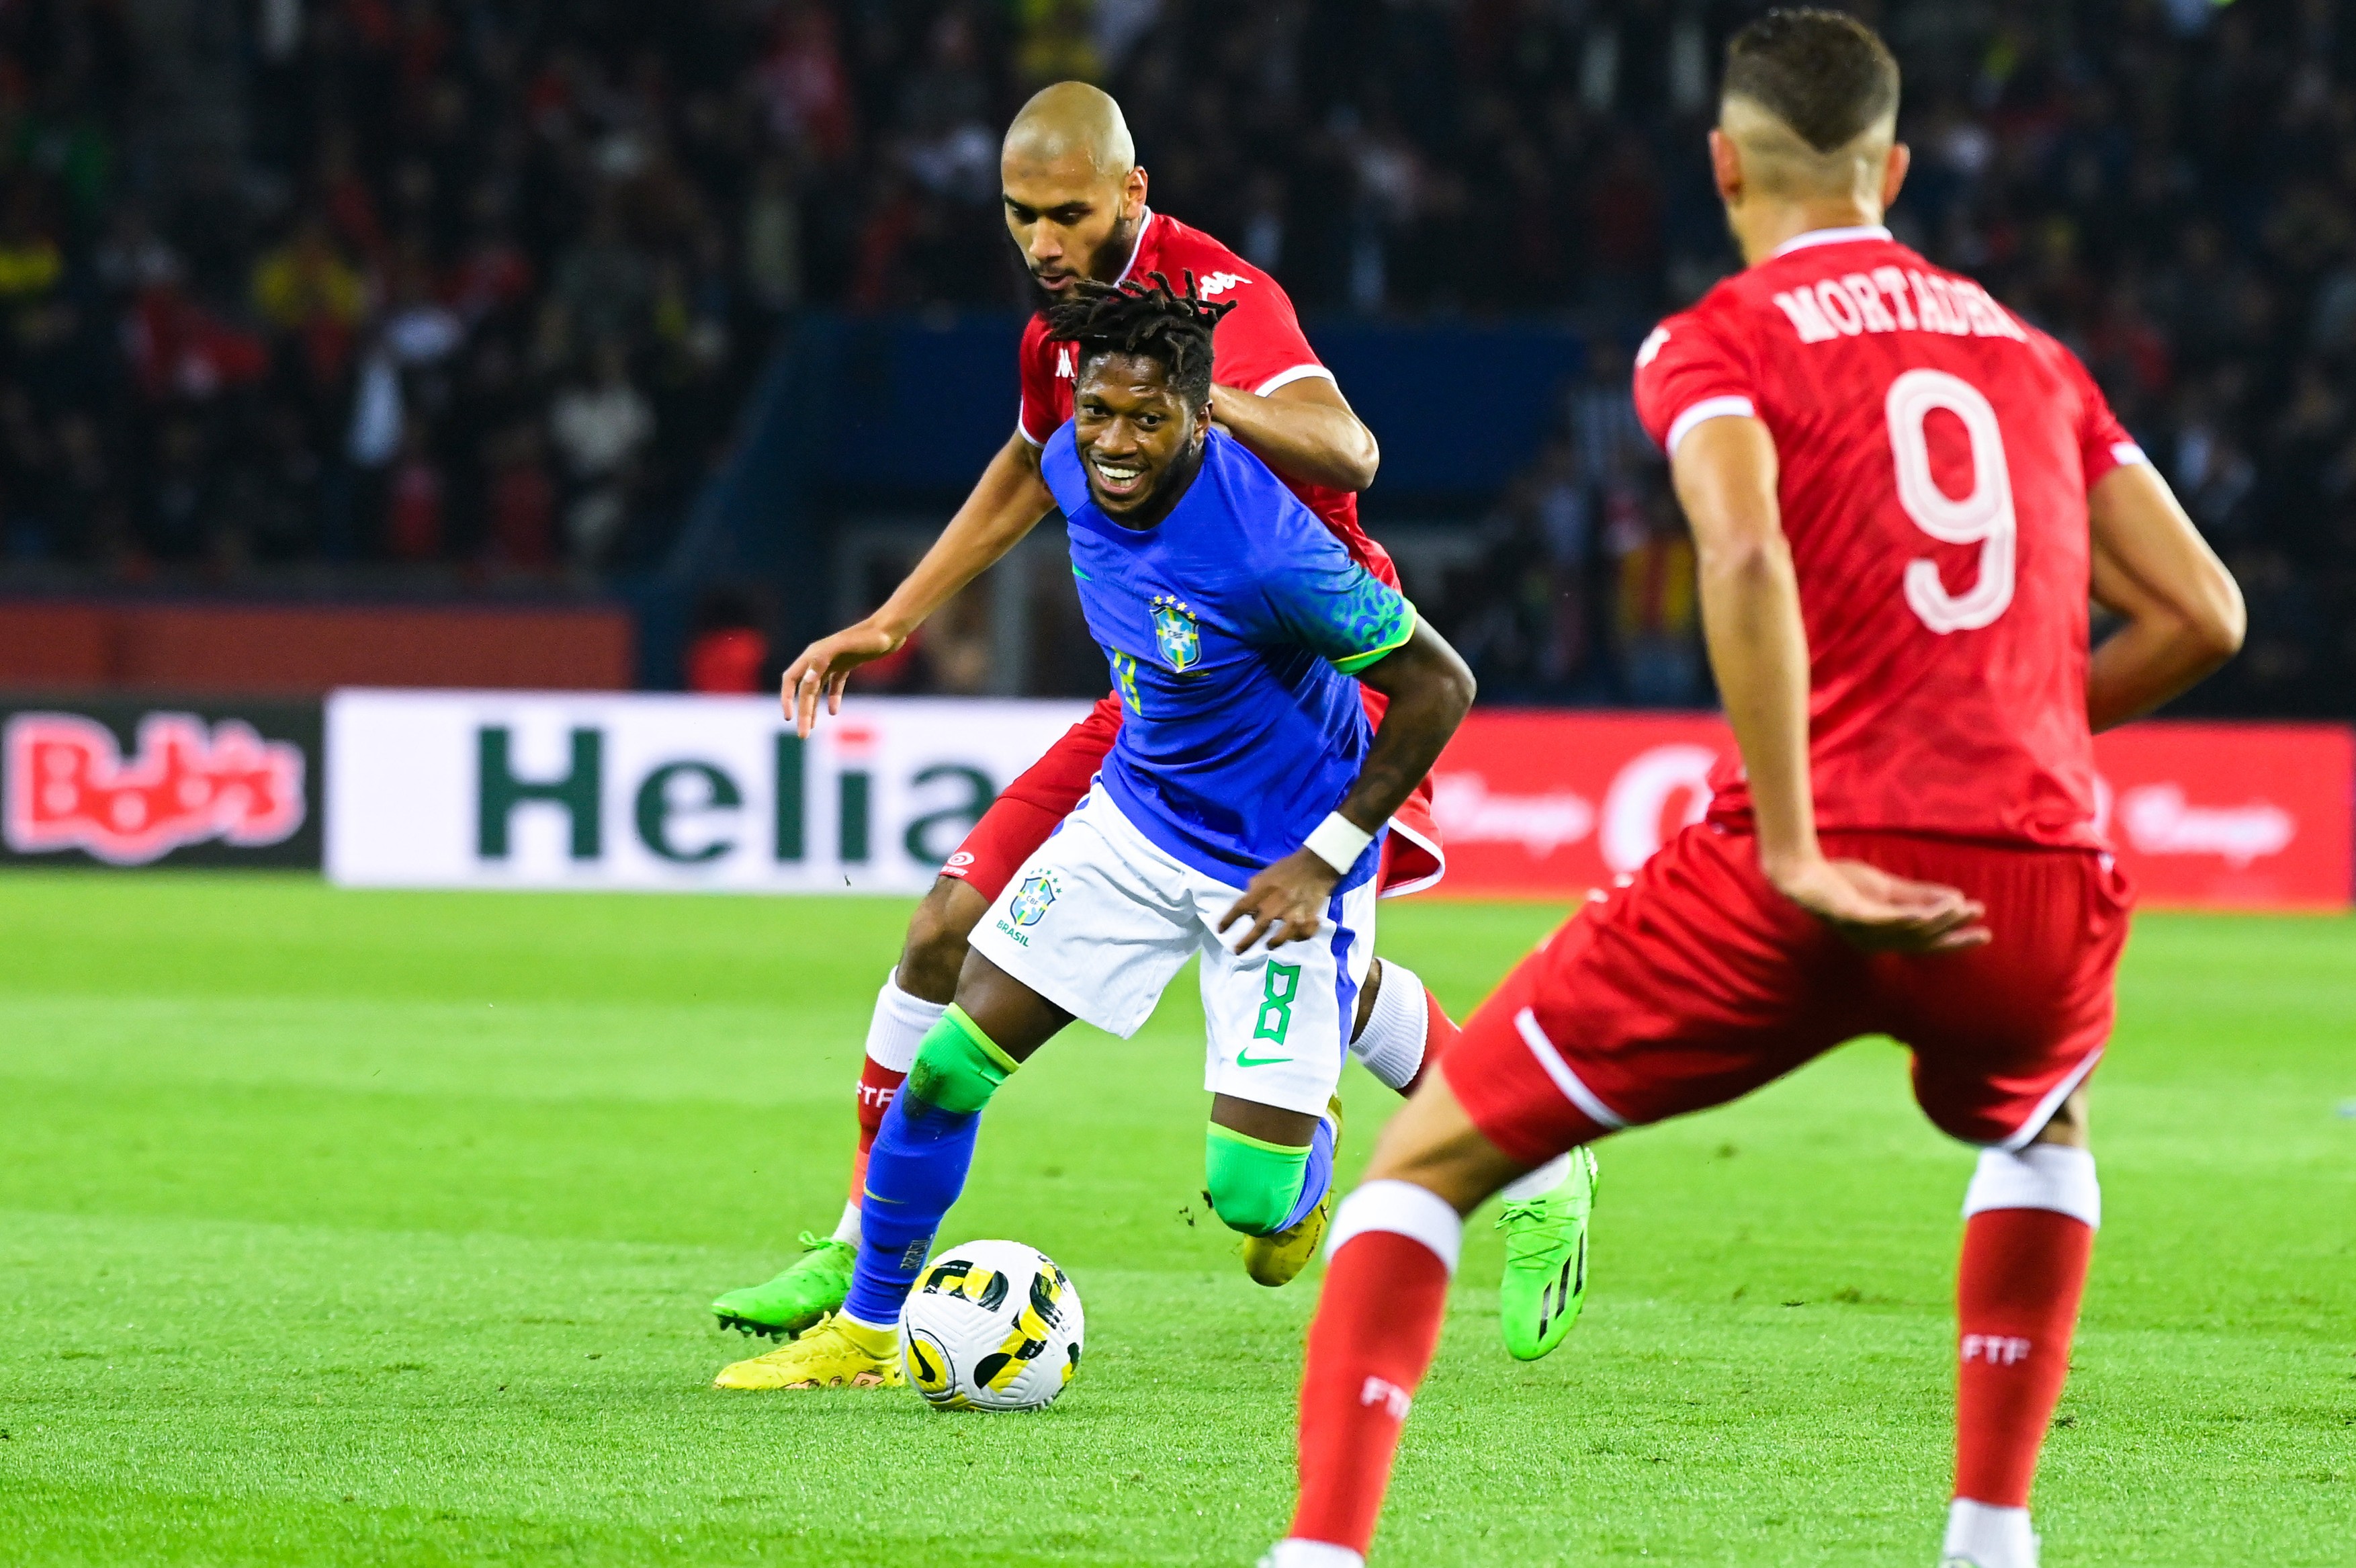 Fotbalistul care l-a refuzat pe Gigi Becali poate juca la Cupa Mondială din Qatar: Foarte eficient în joc